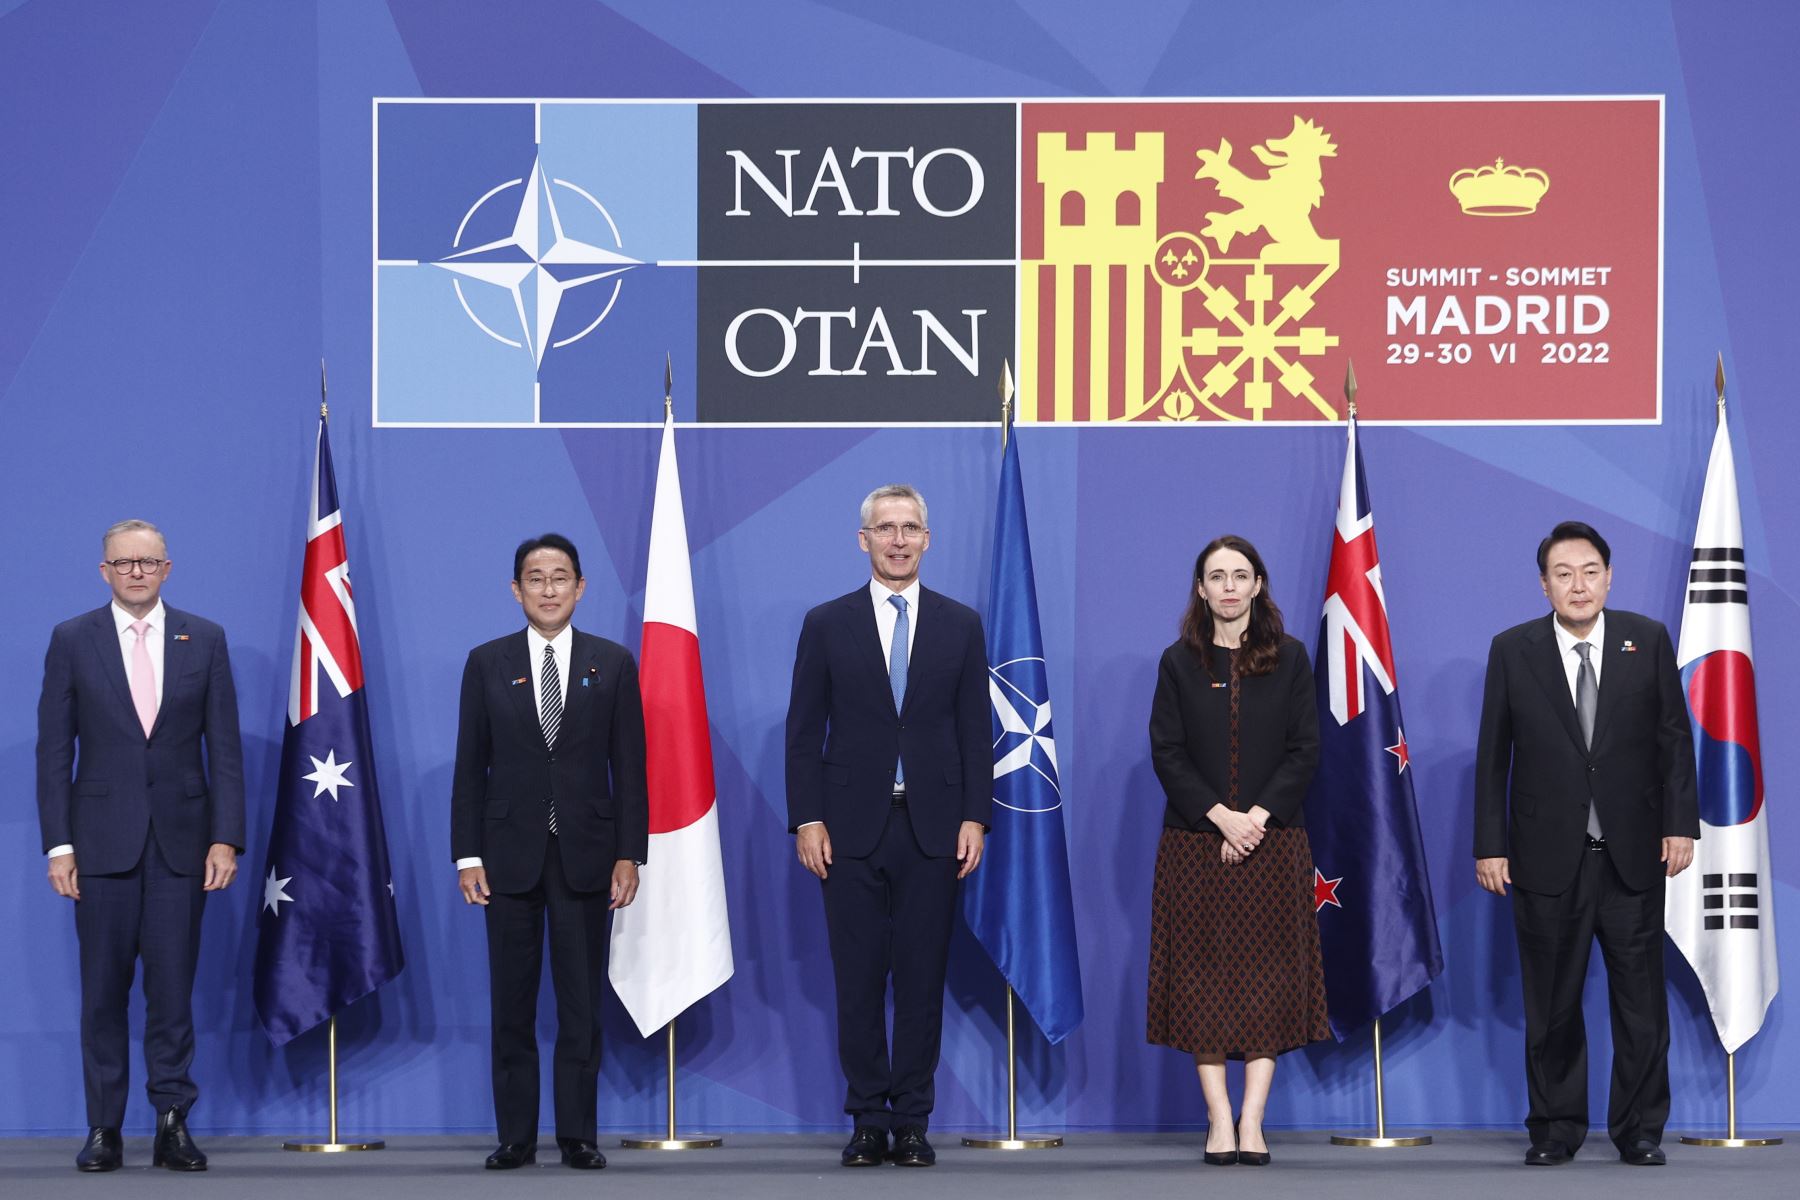 El secretario general de la OTAN, Jens Stoltenberg (c), el primer ministro de Australia, Anthony Albanese (i), el primer ministro de Japón, Fumio Kishida (2-i), la primera ministra de Nueva Zelanda, Jacinda Ardern (2-d), y el presidente surcoreano, Yoon Suk-yeol (d), tras la rueda de prensa durante la primera jornada de la cumbre de la OTAN que se celebra este miércoles en el recinto de Ifema, en Madrid. 
Foto: EFE